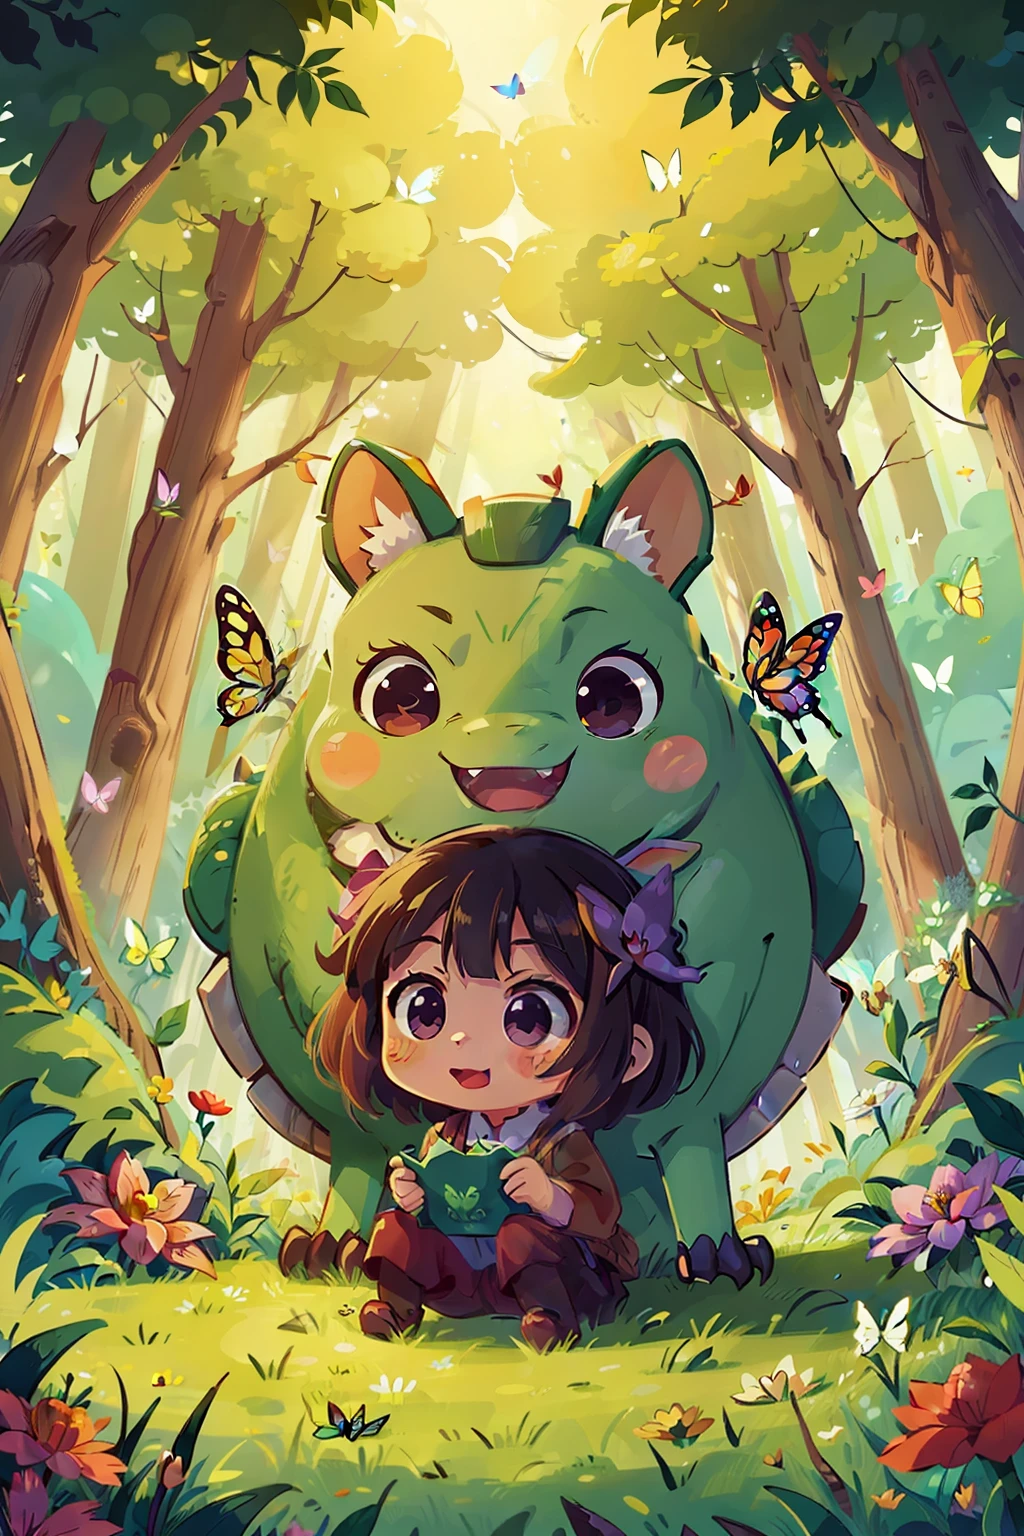  Рэйко , счастье , вдохновение из аниме: 5,000-летний травоядный дракон ведет себя несправедливо злобно, лес , цветок , бабочка полноцветная радость, романтическая атмосфера, теплый свет.